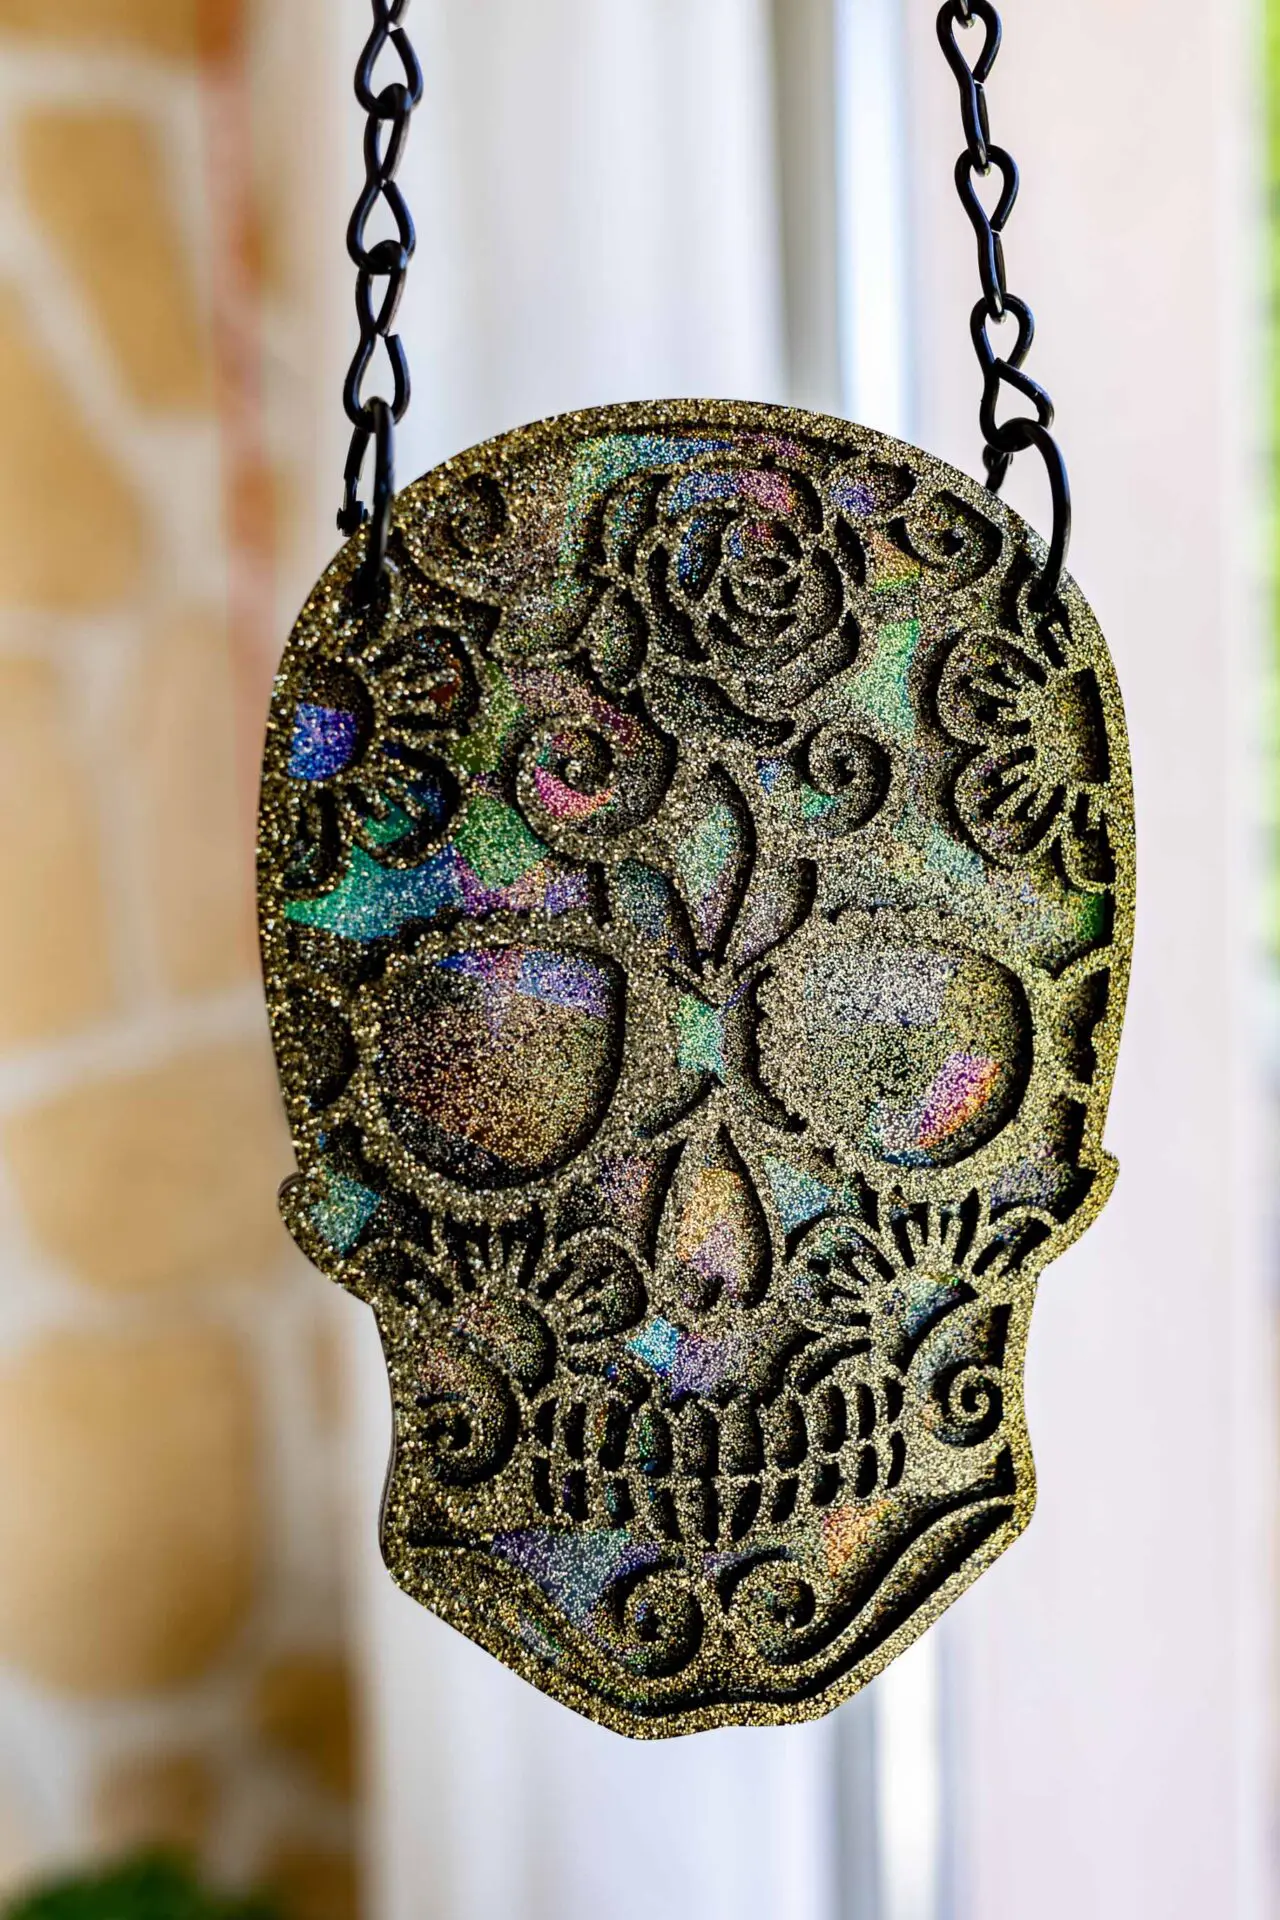 Suspension skull crâne holographique - Doré paillette - Boutique en ligne d'idées cadeau et de décoration pour la fête des mères ou pour un anniversaire